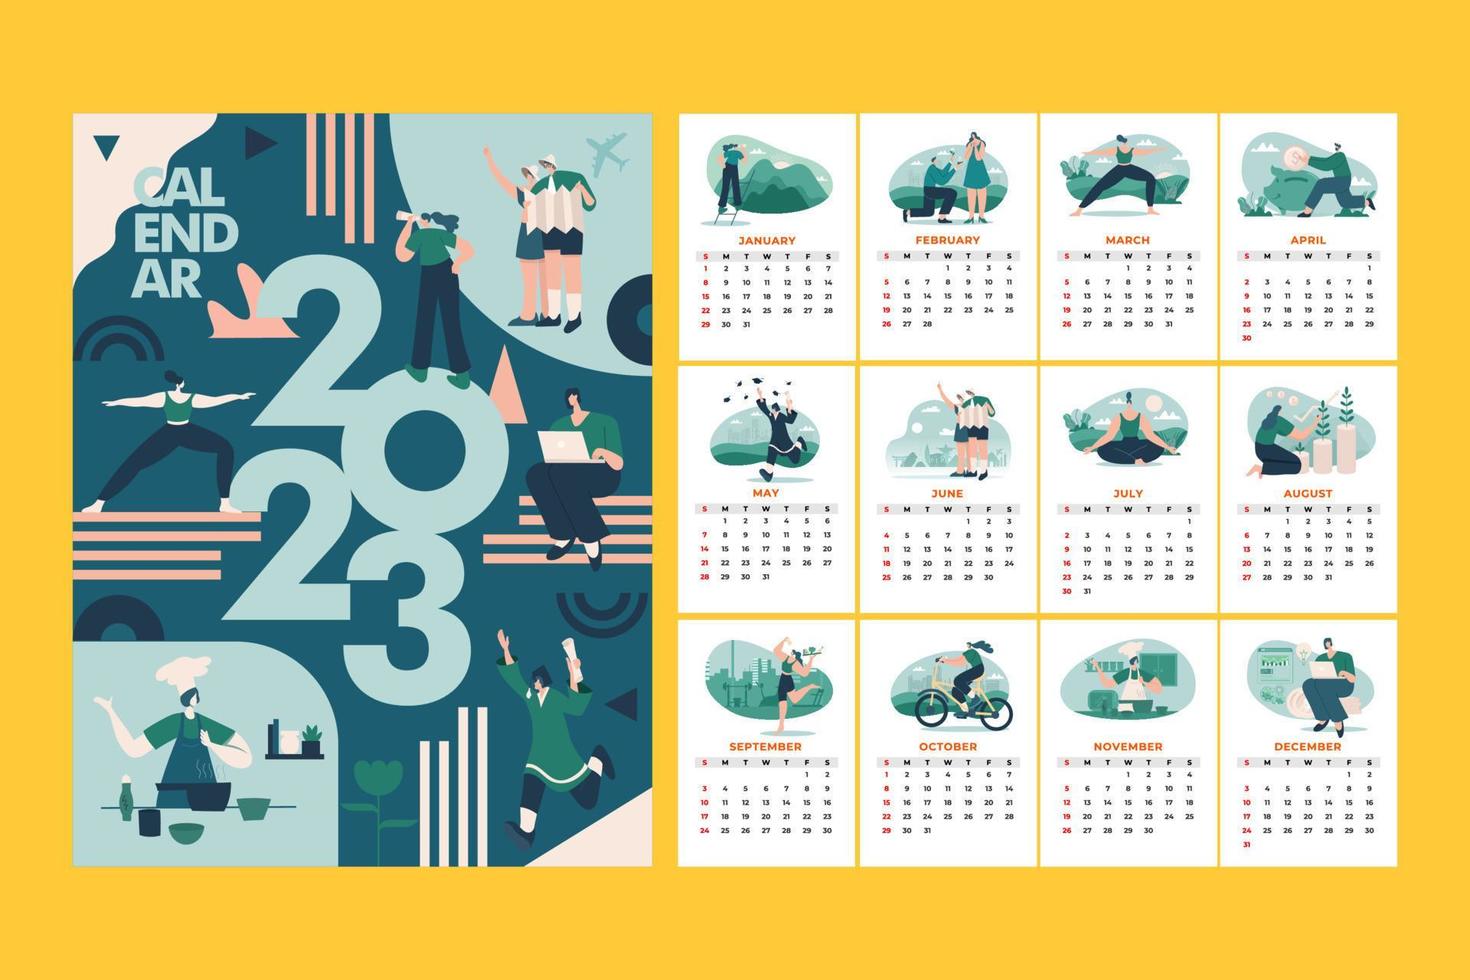 calendário mensal moderno e estilizado de 2023 com ilustração do conceito de metas e resoluções 2023 vetor